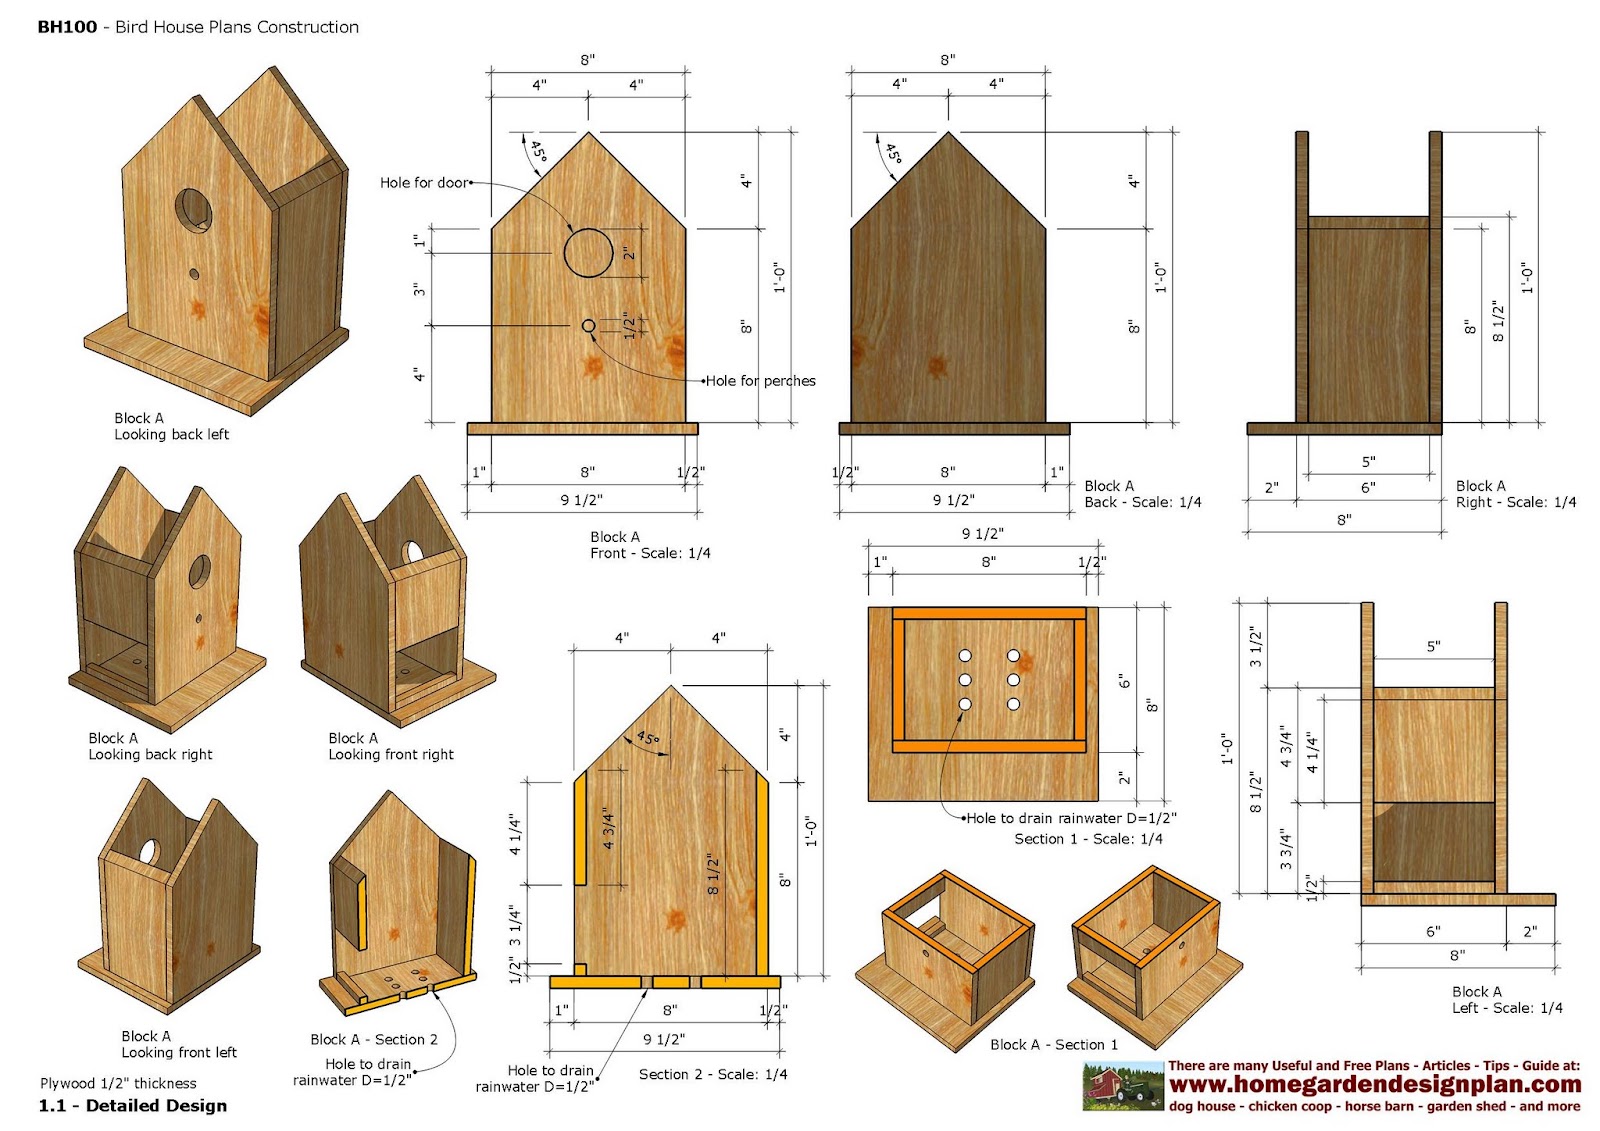 home-garden-plans-bh-bird-house-plans-construction-bird-house-design